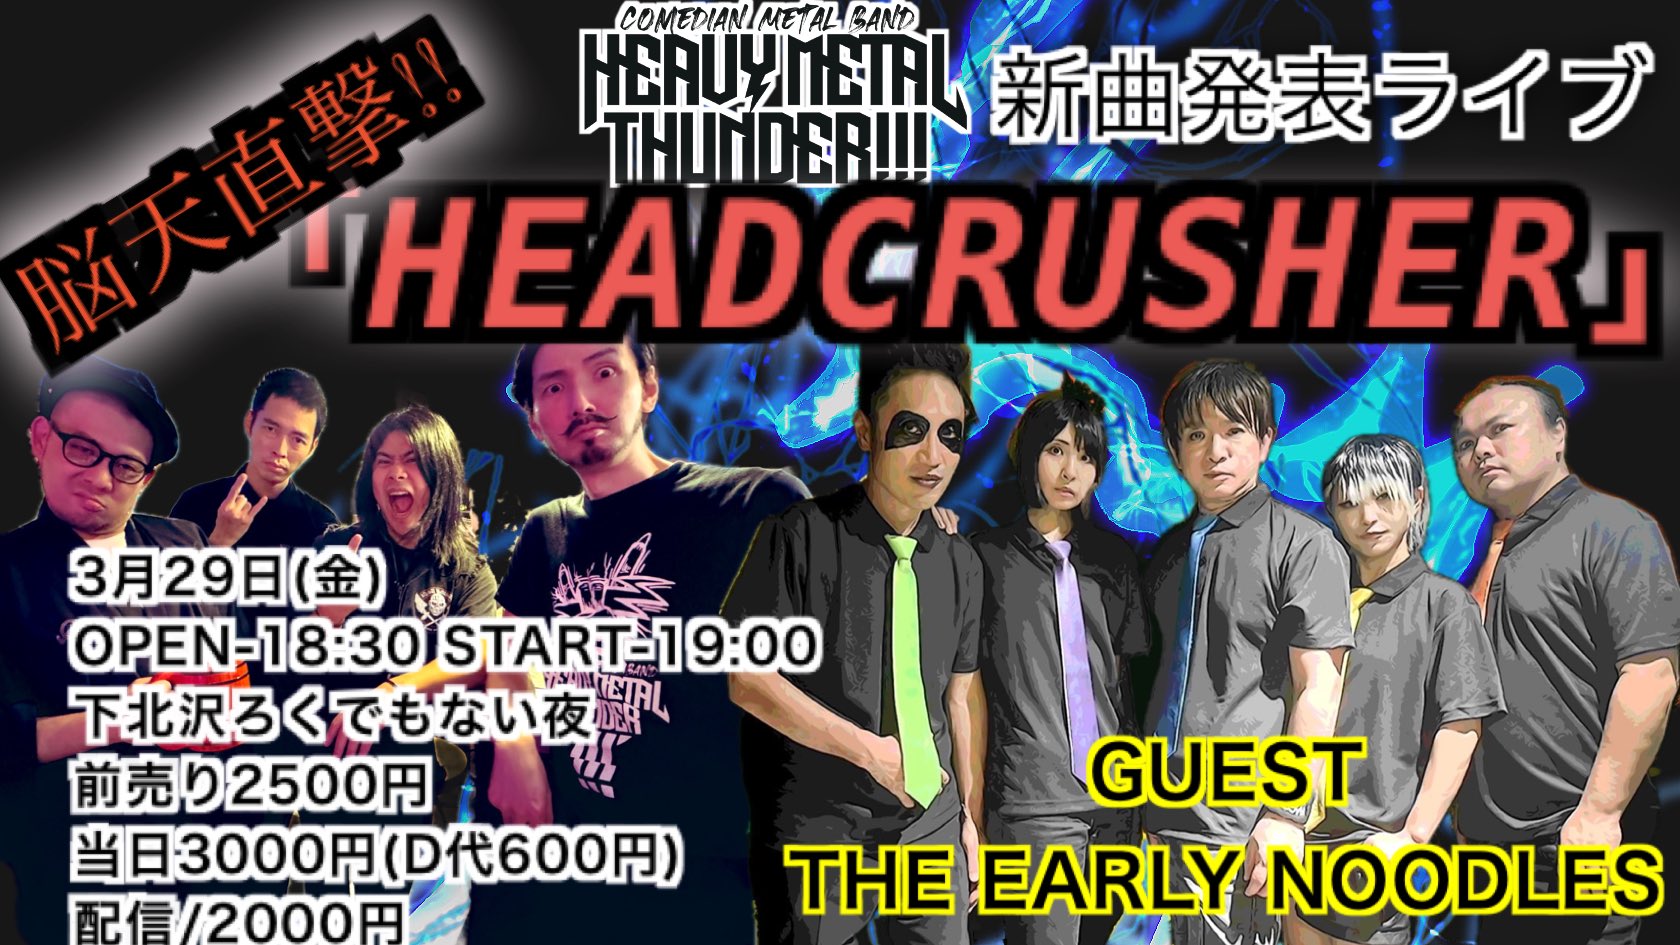 芸人メタルバンドHEAVYMETALTHUNDER!!! 新曲発表会ライブ”脳天直撃HEADCRUSHER ”  with THE EARLY NOODLES